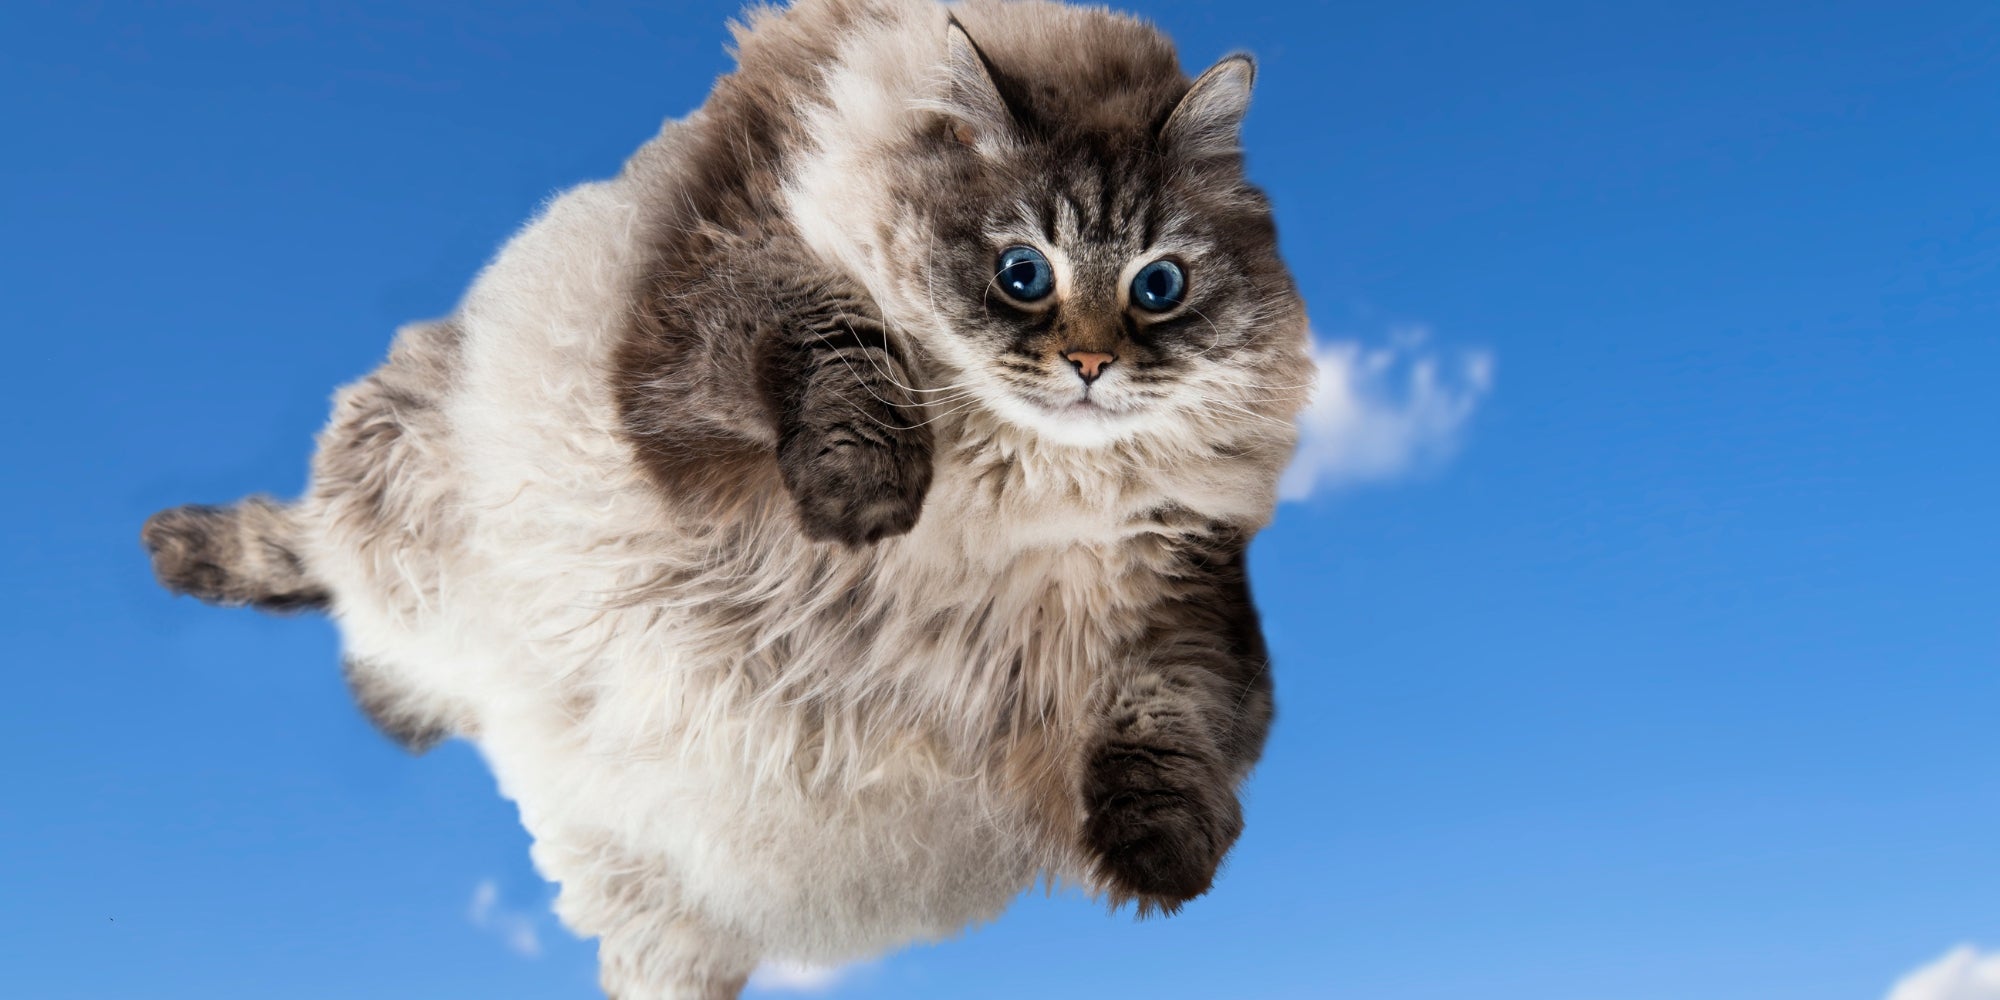 Divertido Gato gordo levitando en el cielo